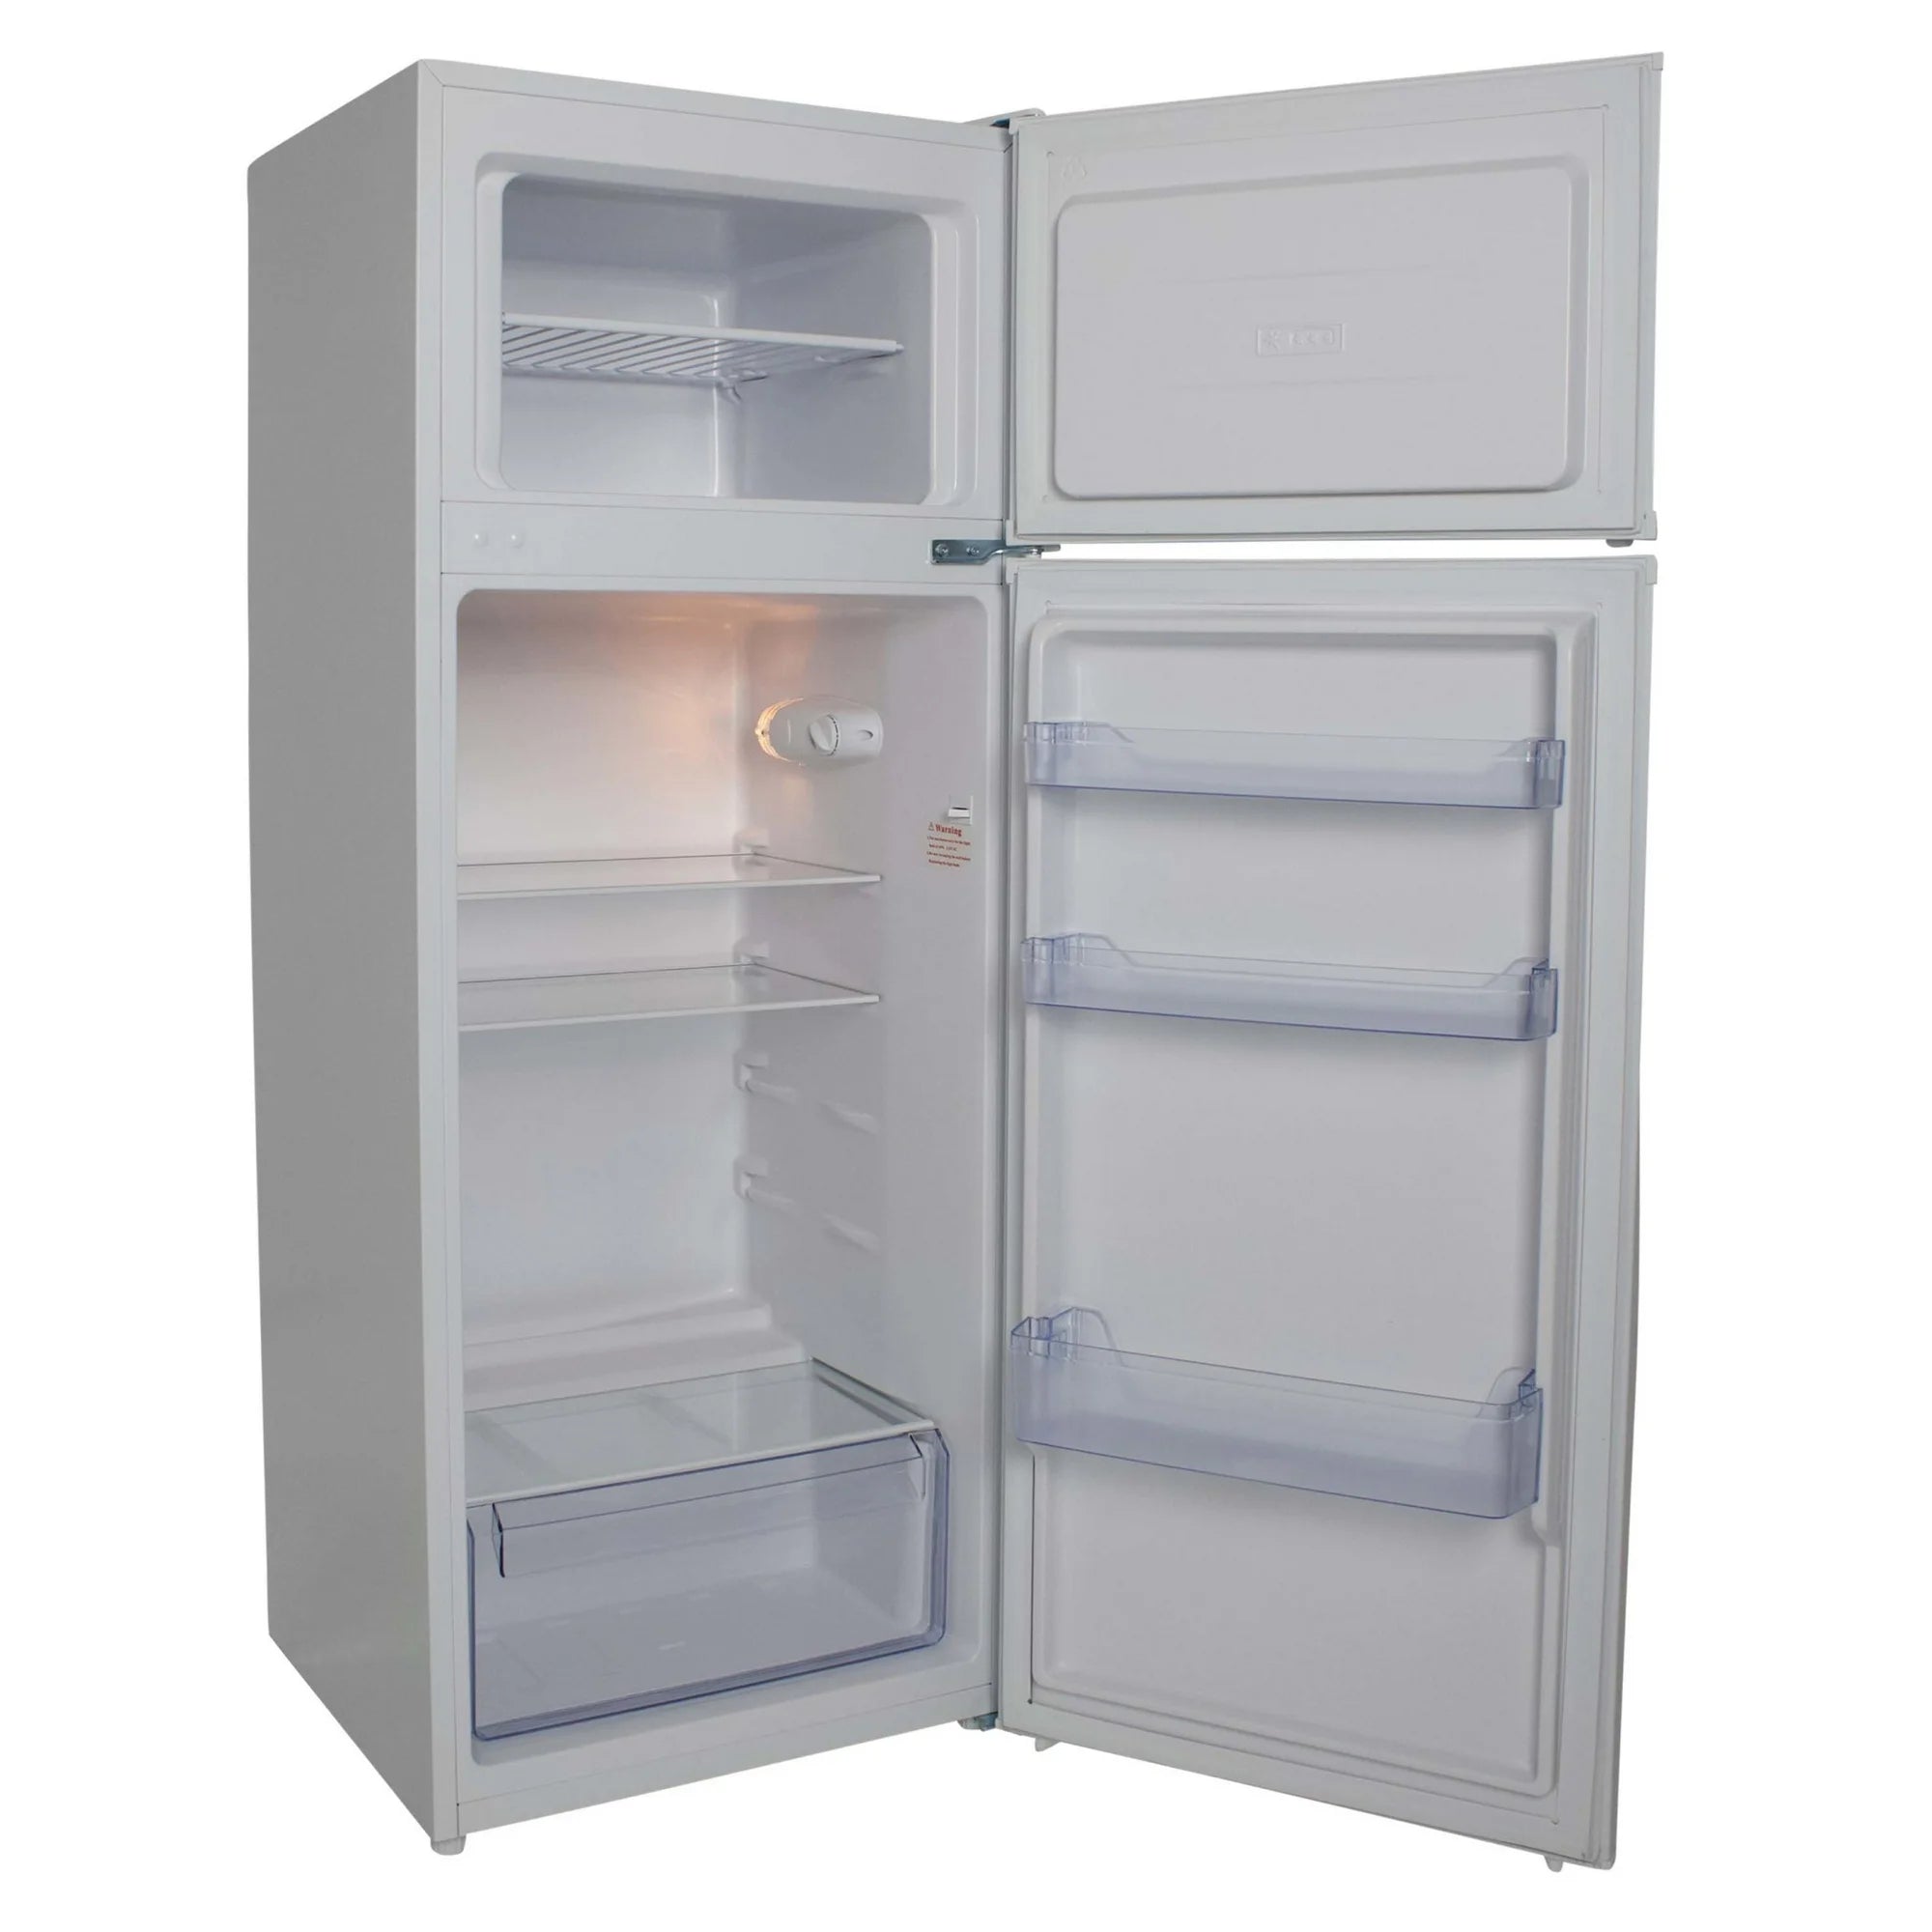 Avanti 7.3 Cu. Ft. Top Freezer Refrigerator